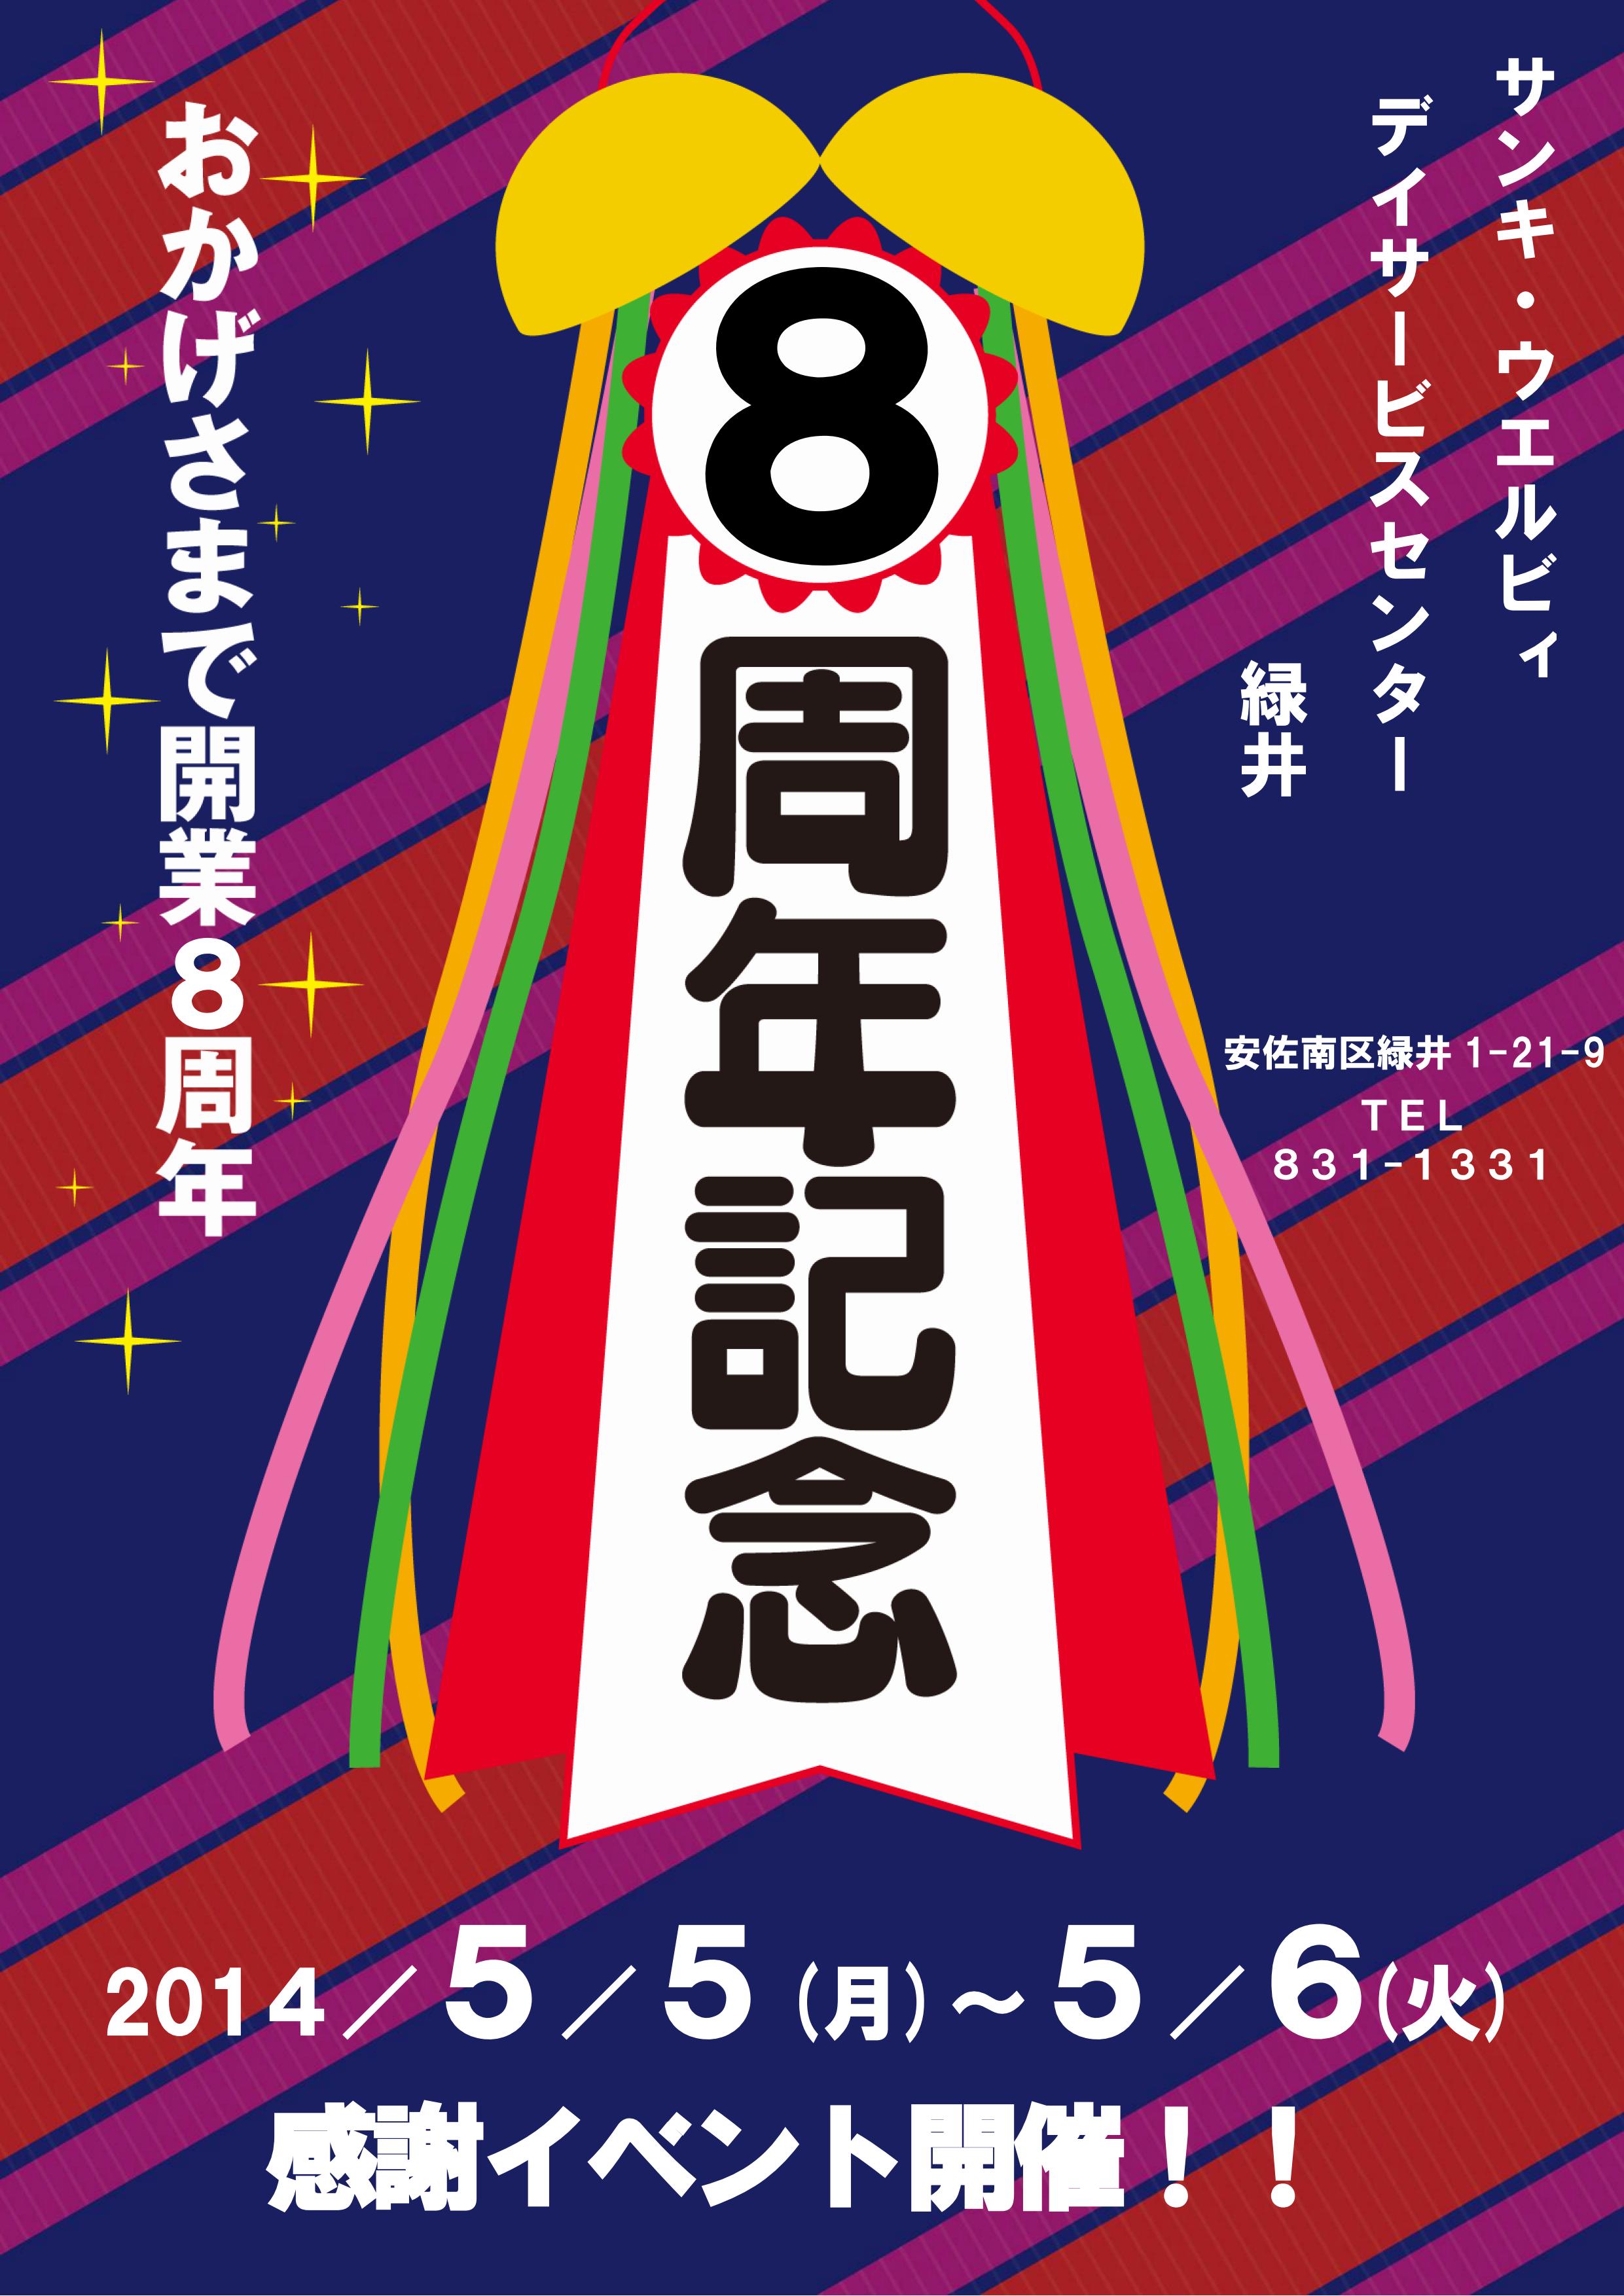 【告知】デイサービスセンター緑井8周年記念祭